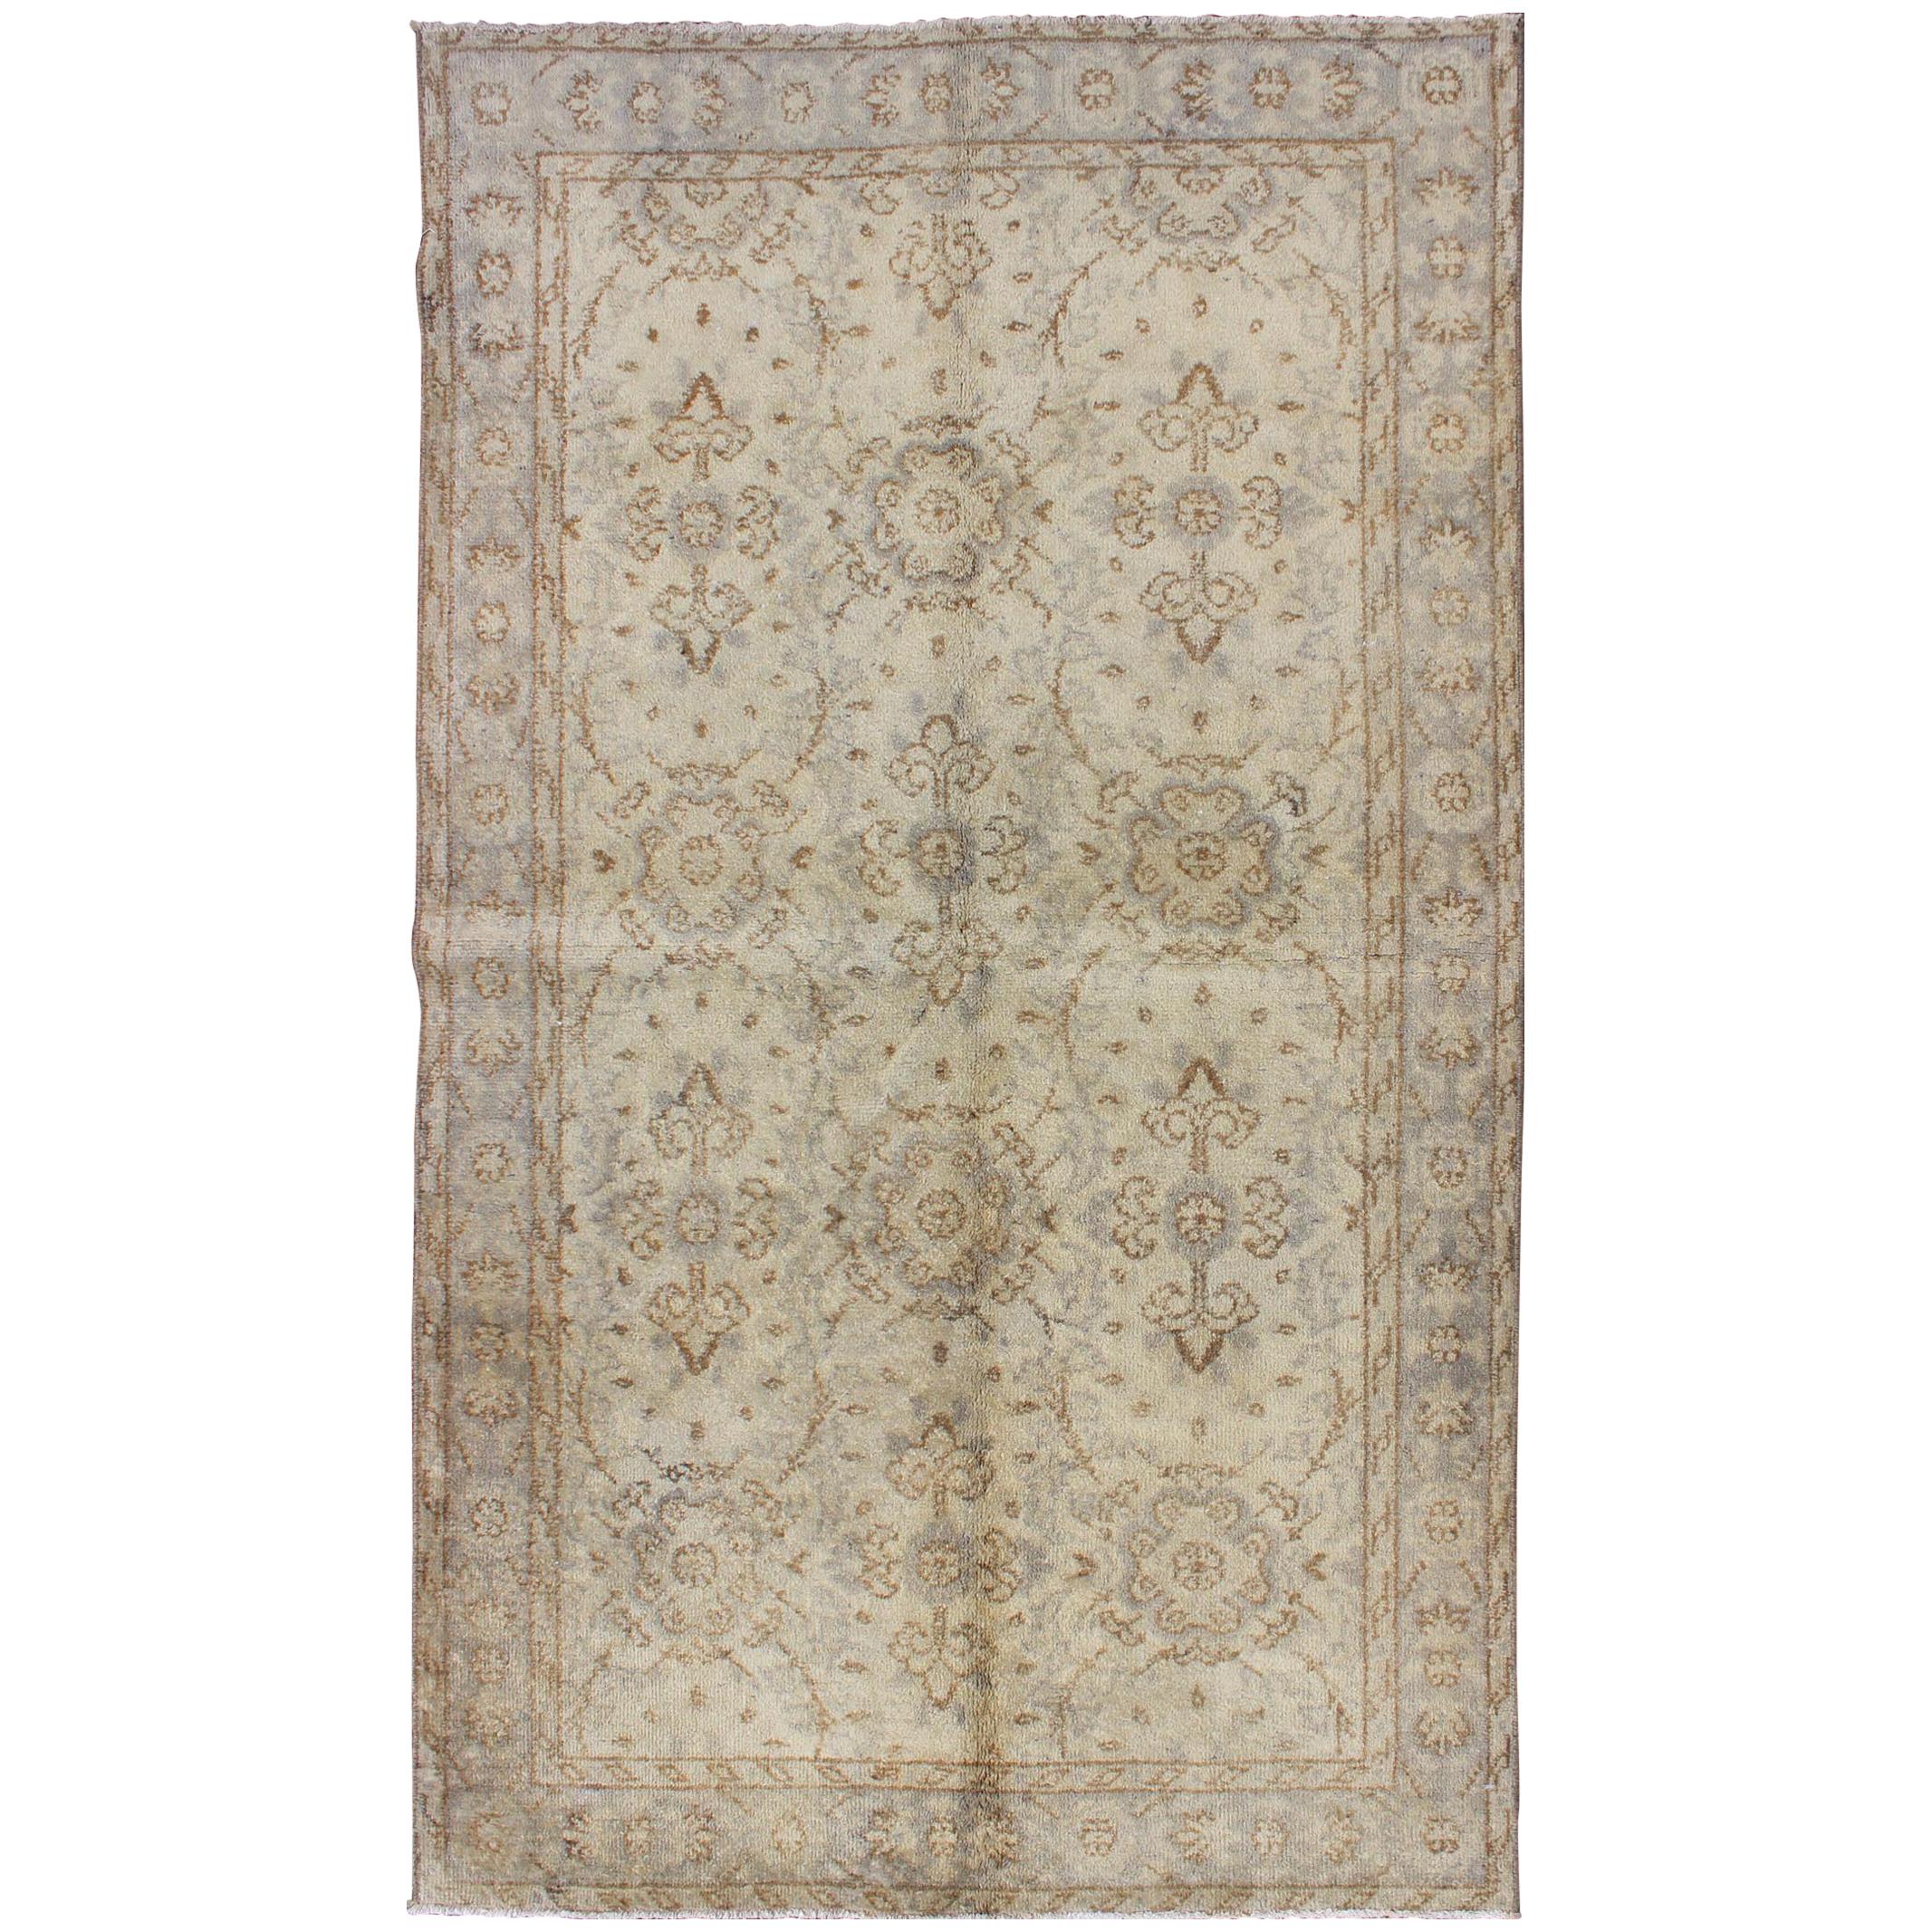 Türkischer Oushak-Teppich im Vintage-Stil mit All-Over-Blumenmuster in Elfenbein, Grau und Braun